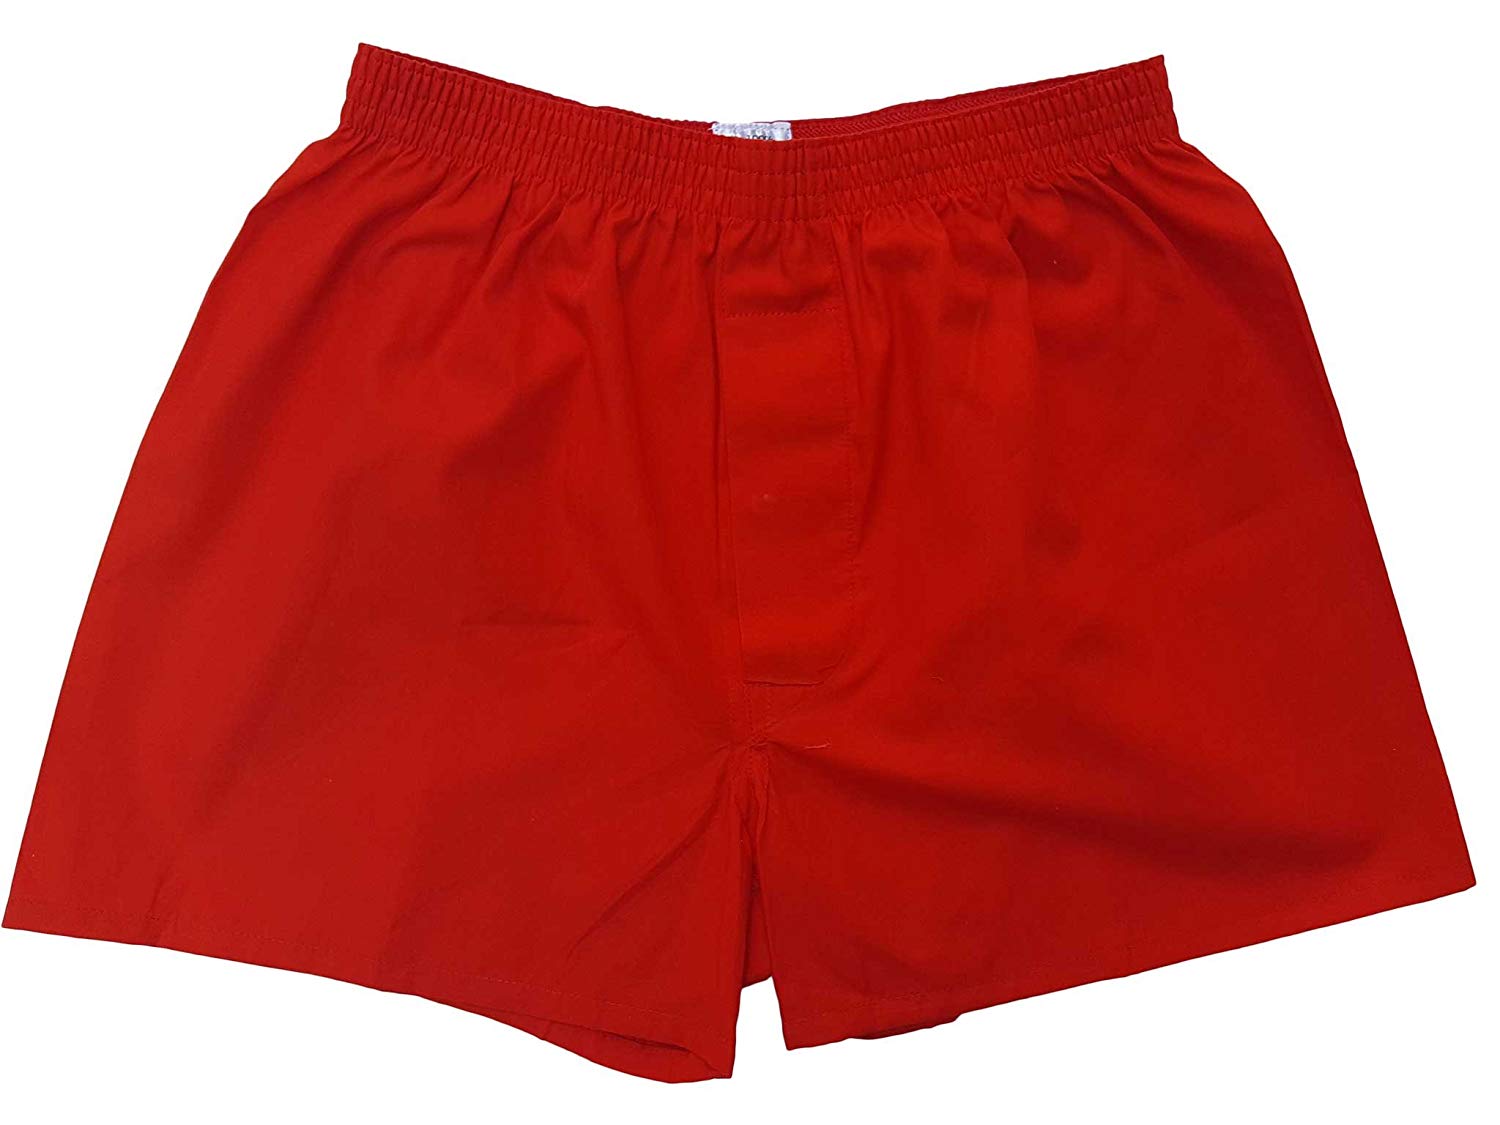 トランクス 赤 赤色 赤い 日本製 5枚 セット 父の日 ギフト 誕生日 プレゼント 福袋 送料無料 還暦祝い メンズ 下着 男性 M L LL 綿100% 前開き 赤パンツ